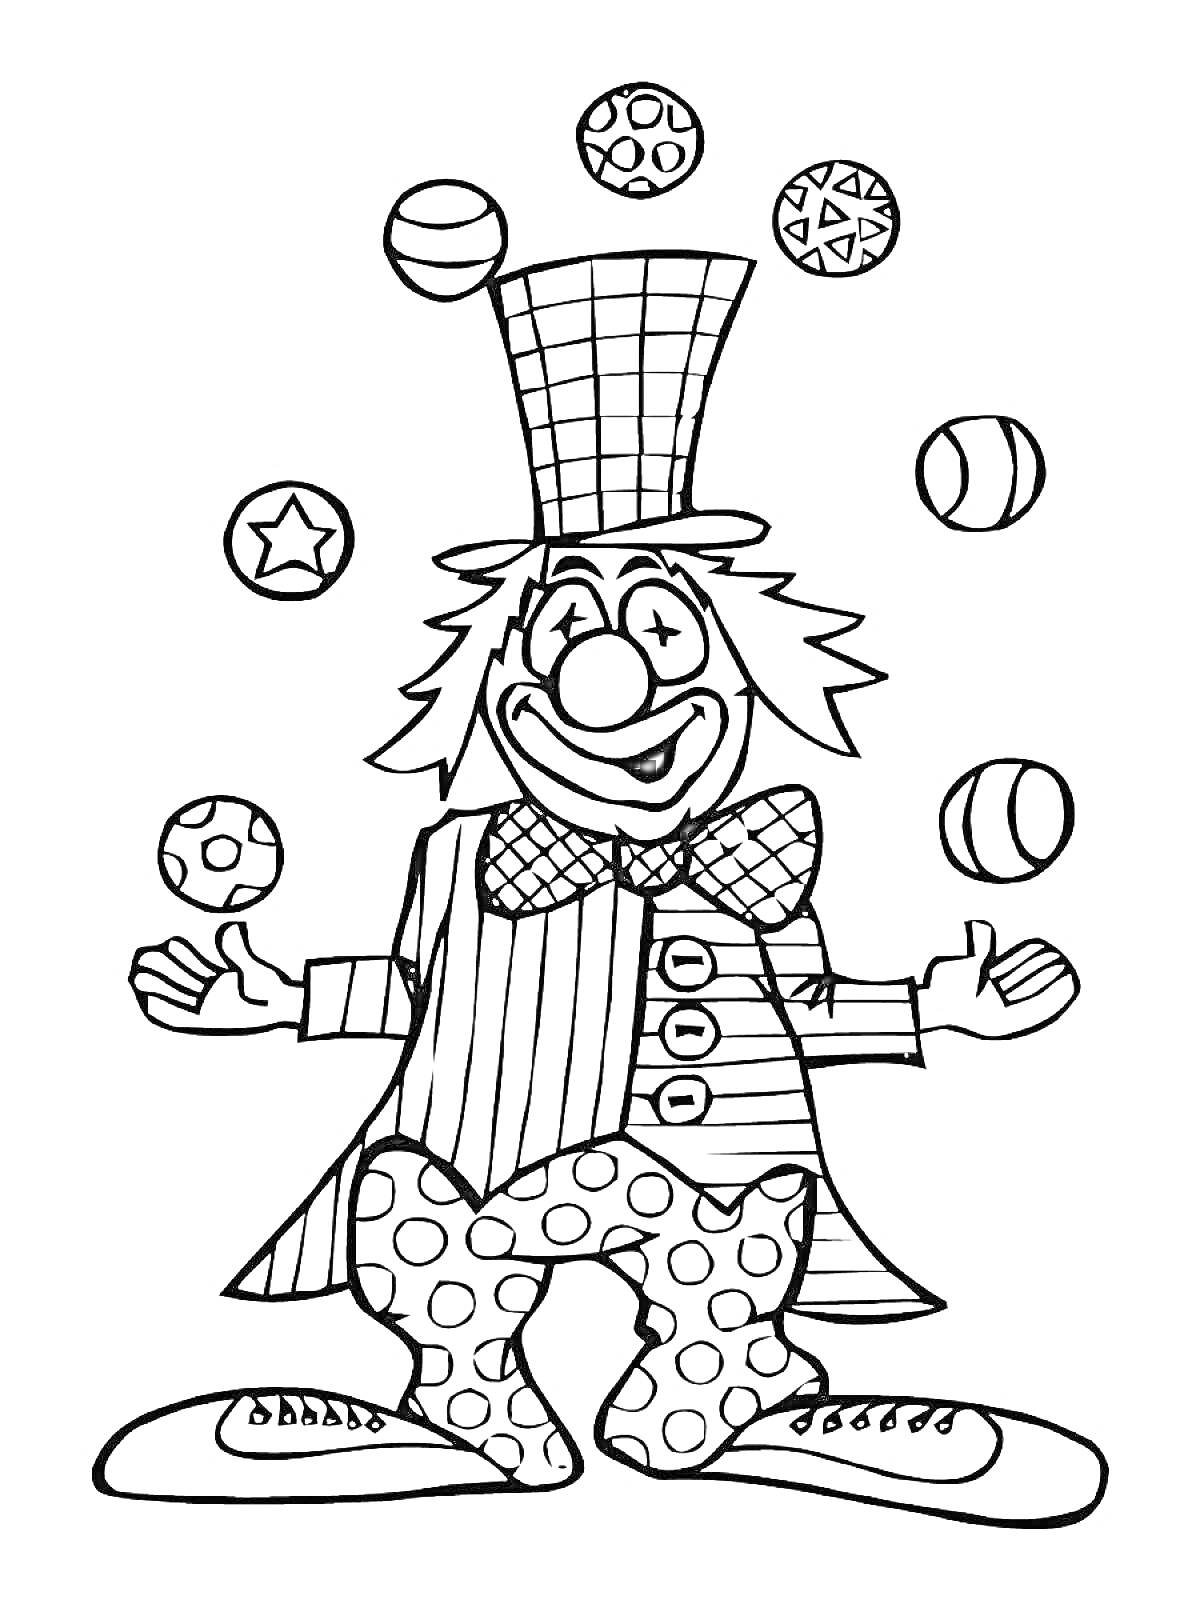 Раскраска Клоун, жонглирующий мячами в шляпе, с бабочкой, в пиджаке и штанах с крупным узором